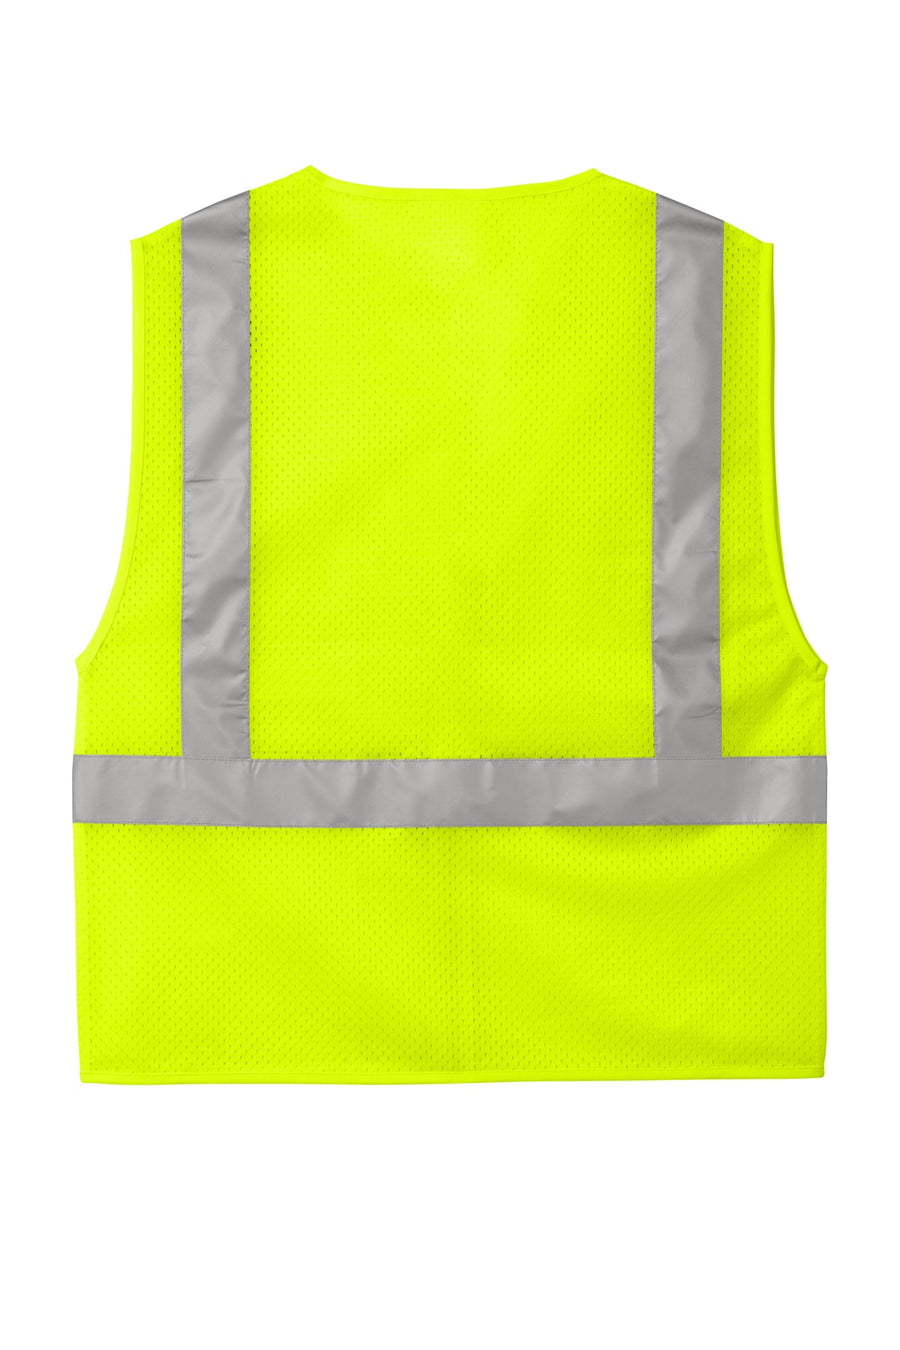 CSV102-Safety Yellow-back_flat